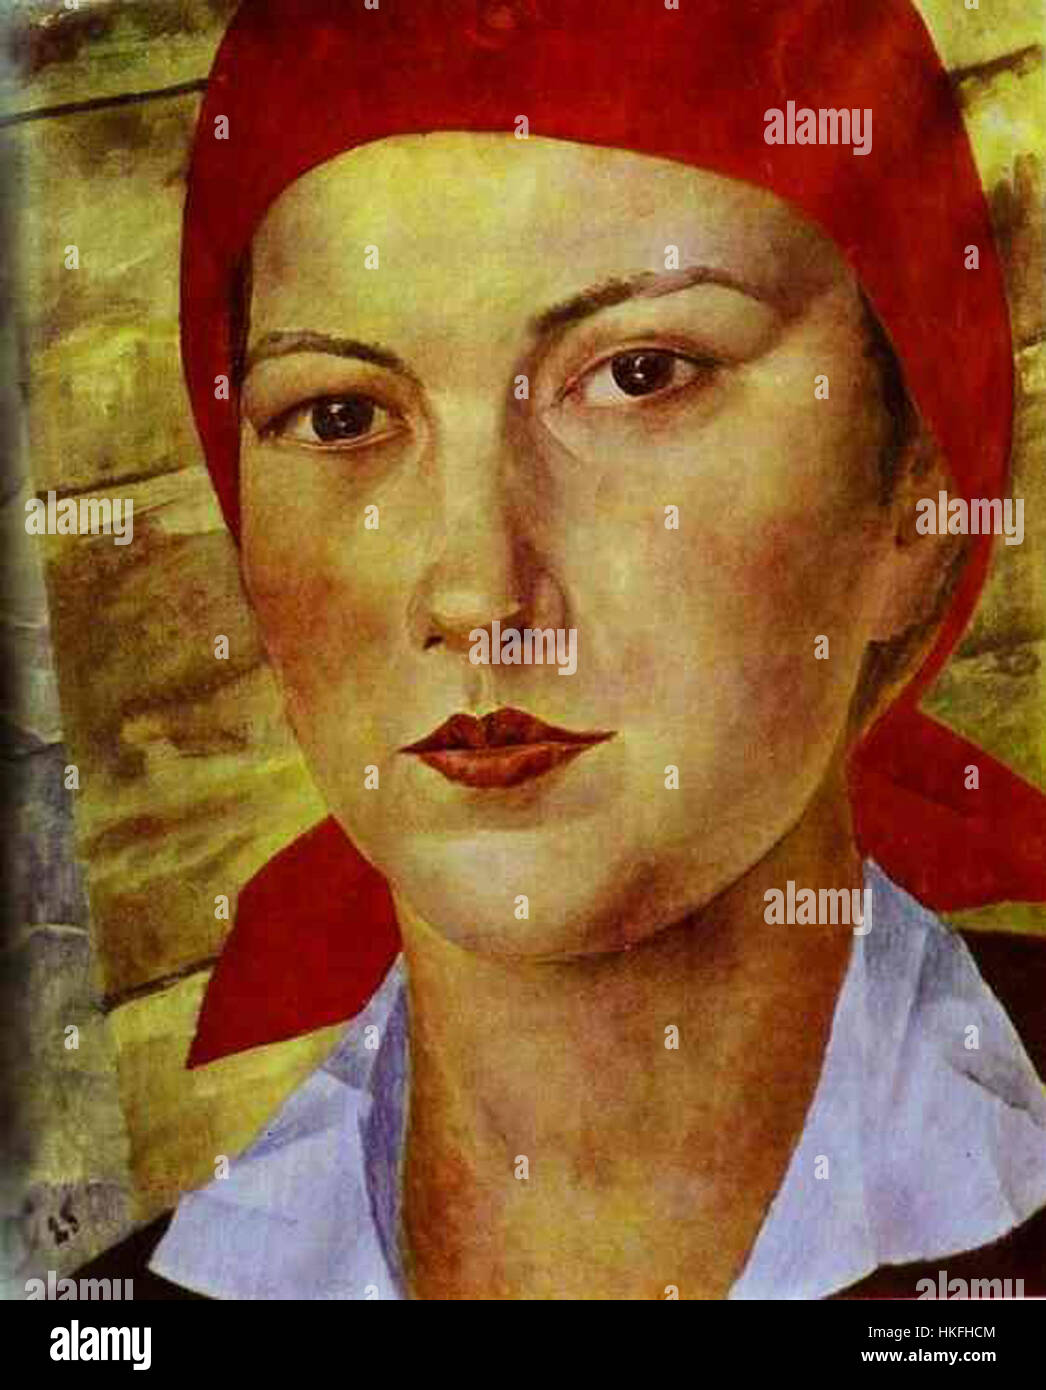 Petrow-Wodkin-Mädchen im roten Kopftuch (1925 Stockfotografie - Alamy